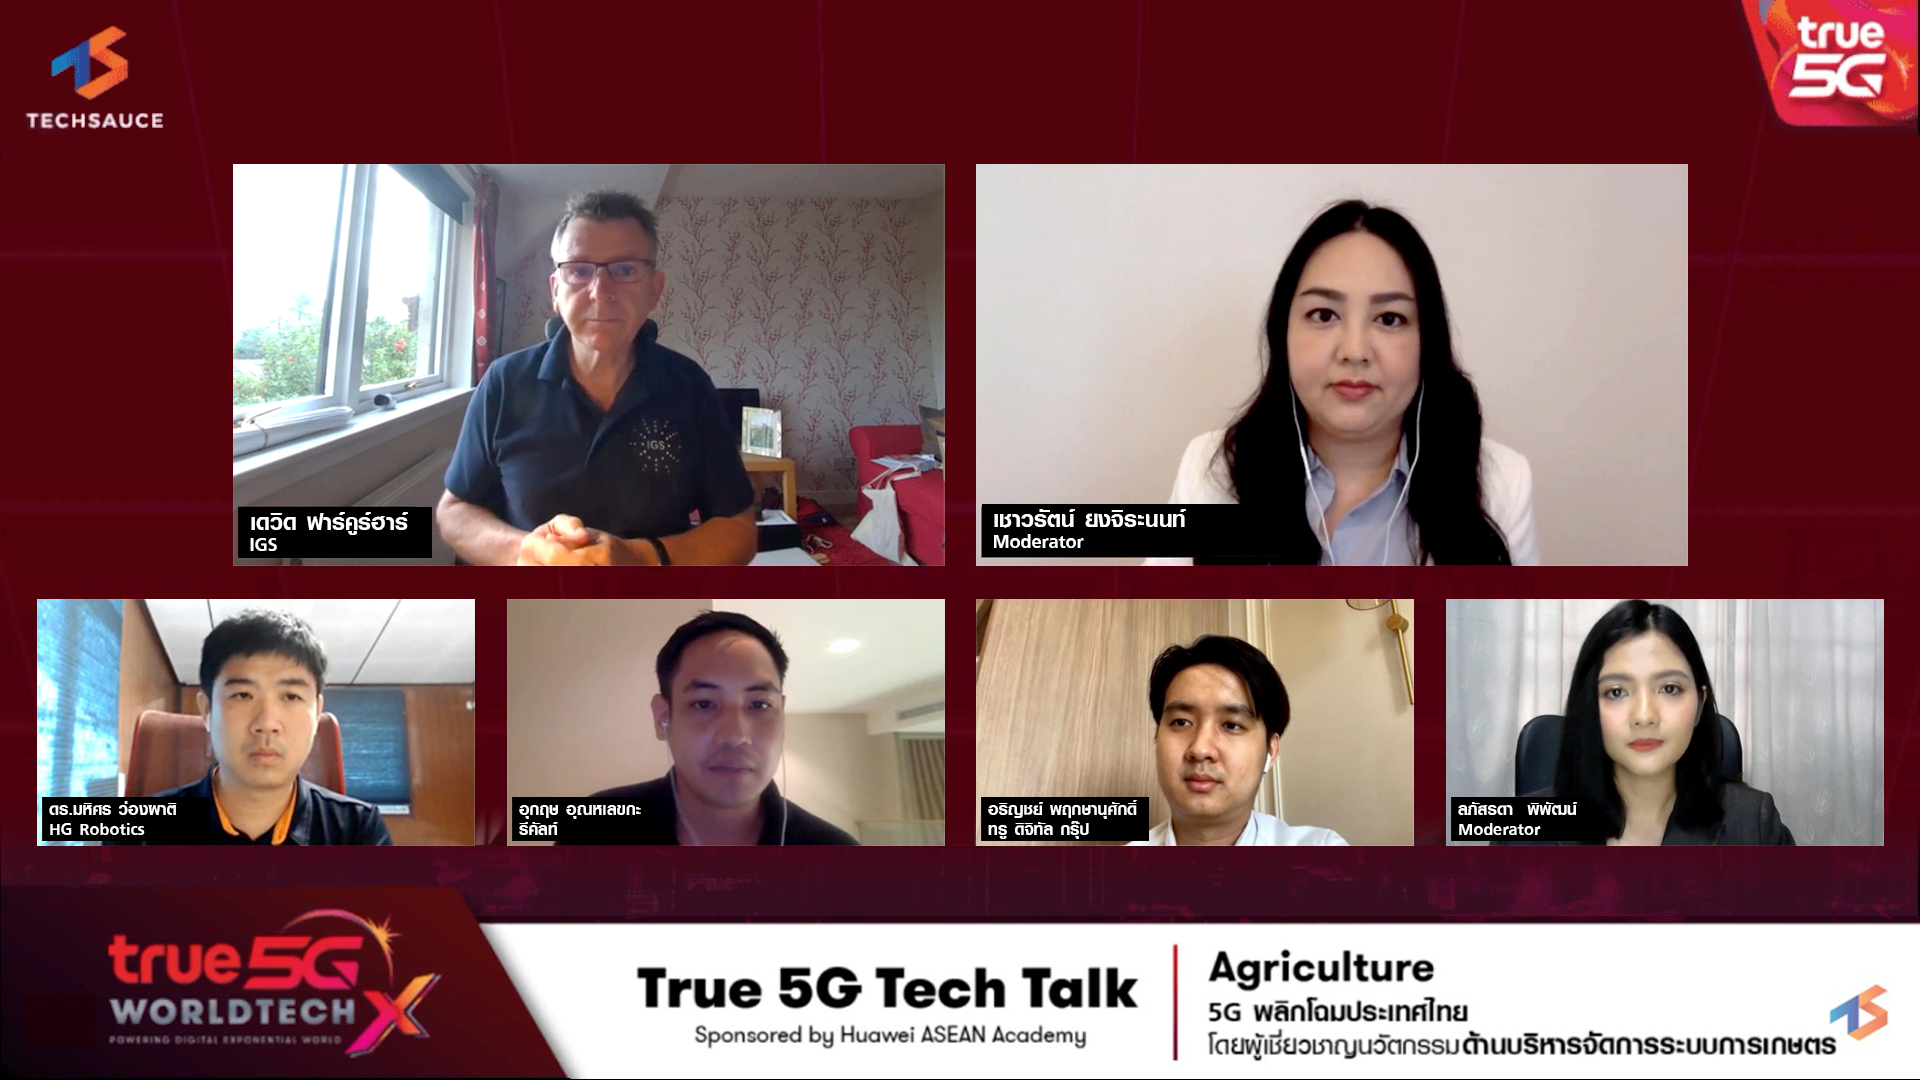 เทรนด์เกษตรกรยุค 5G ลดต้นทุน เพิ่มผลผลิต ธุรกิจเติบโตได้อย่างยั่งยืน เปิดมุมมองผ่านเวทีการสัมมนา 5G พลิกโฉมประเทศไทย “True 5G Tech Talk” ครั้งที่ 4 